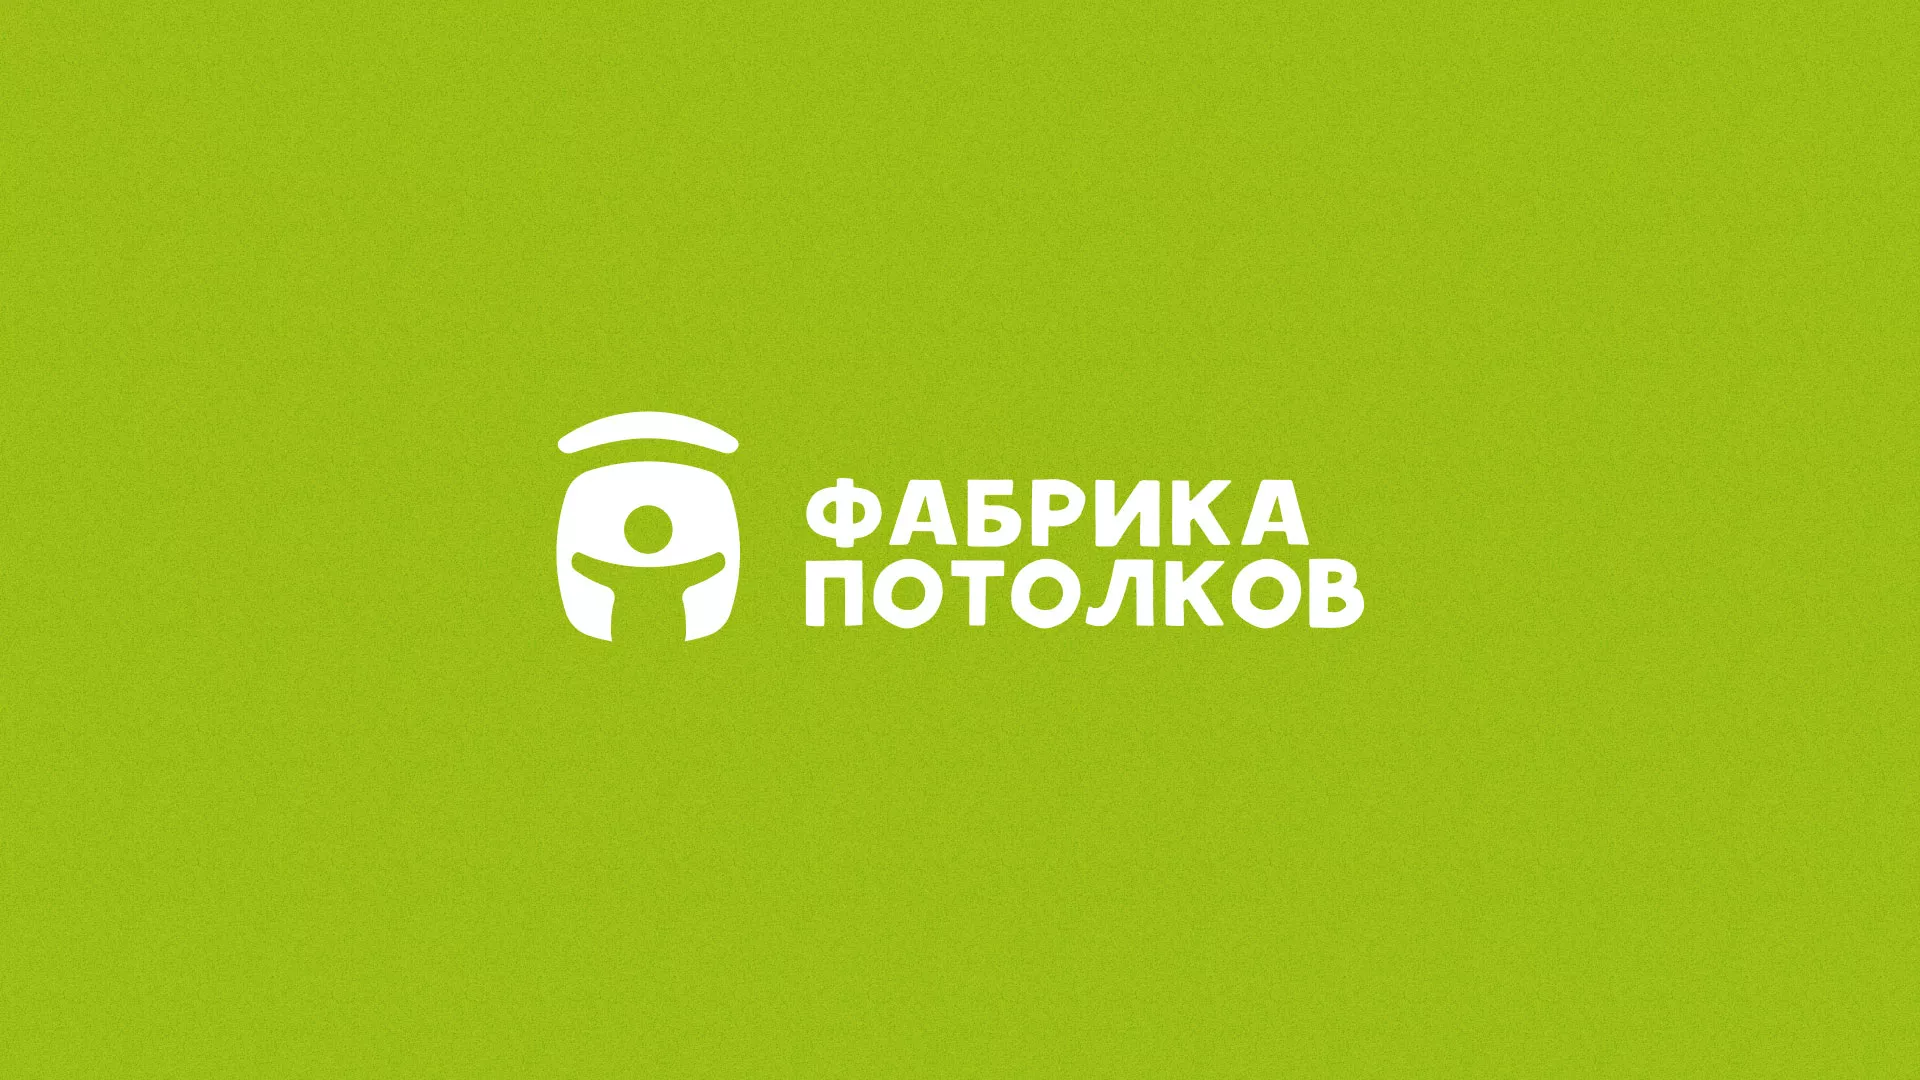 Разработка логотипа для производства натяжных потолков в Санкт-Петербурге